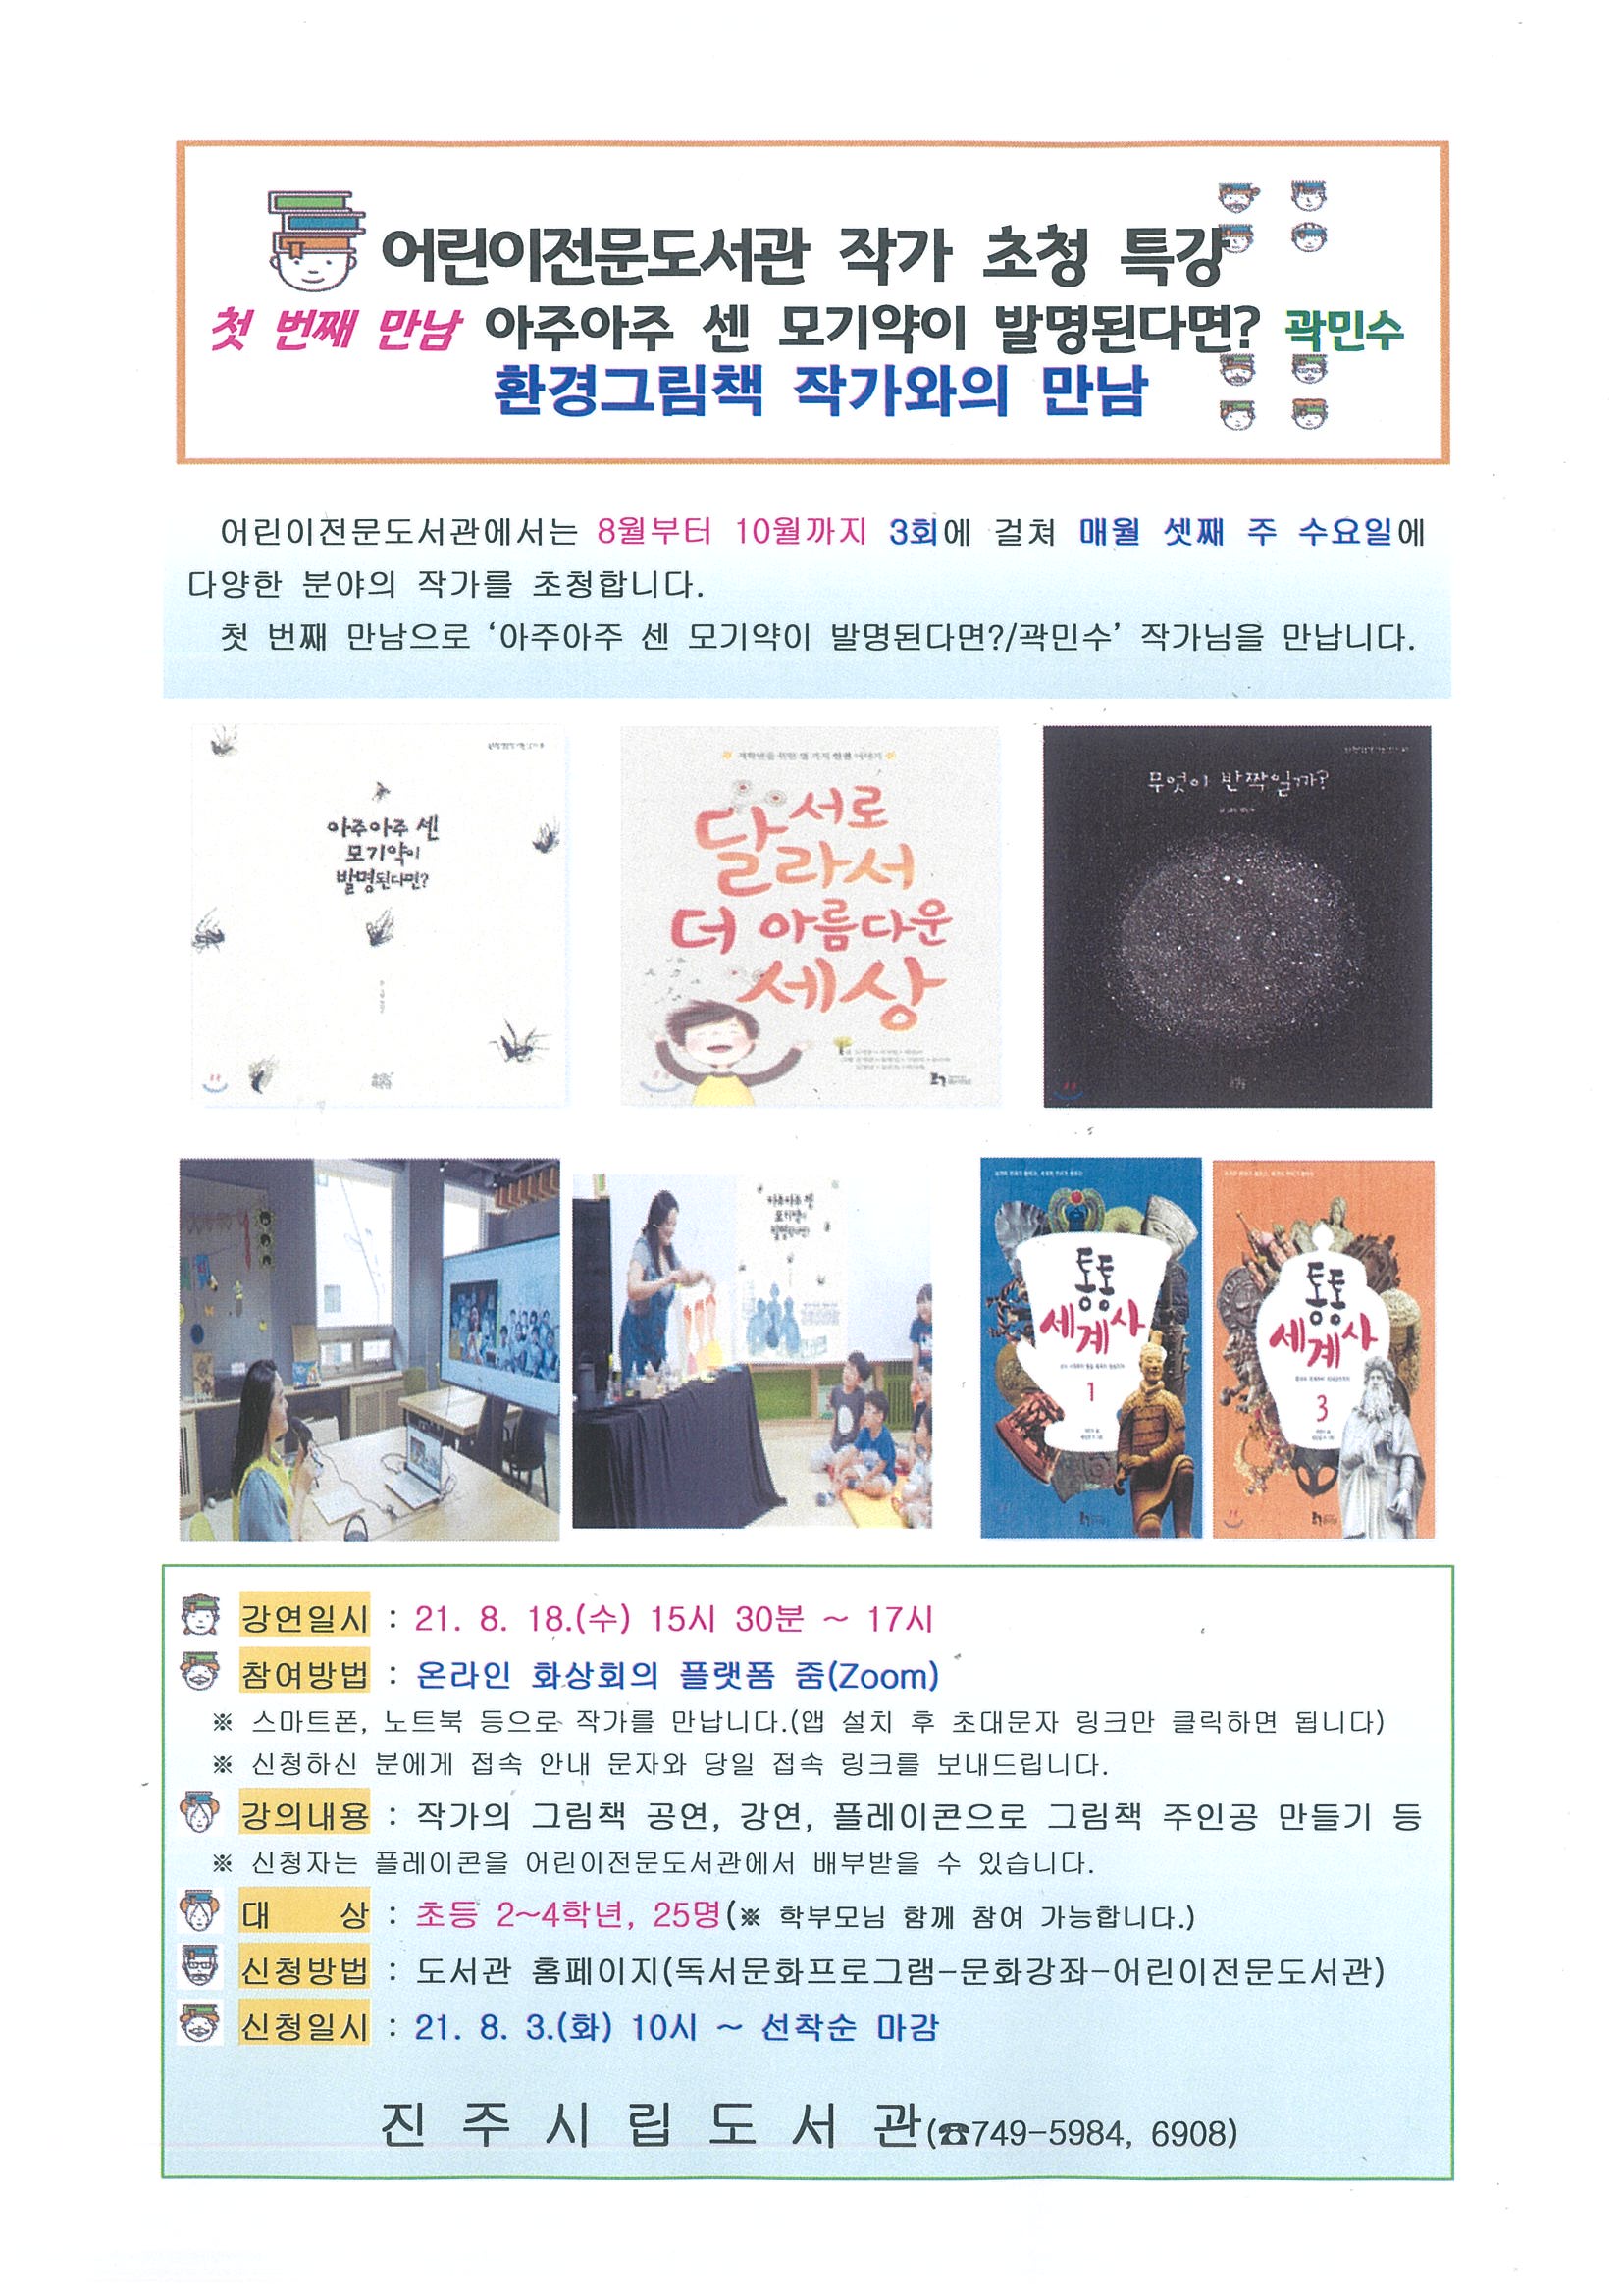 [8월 18일(수)]어린이전문도서관 작가초청 특강 1차(곽민수) 신청 안내